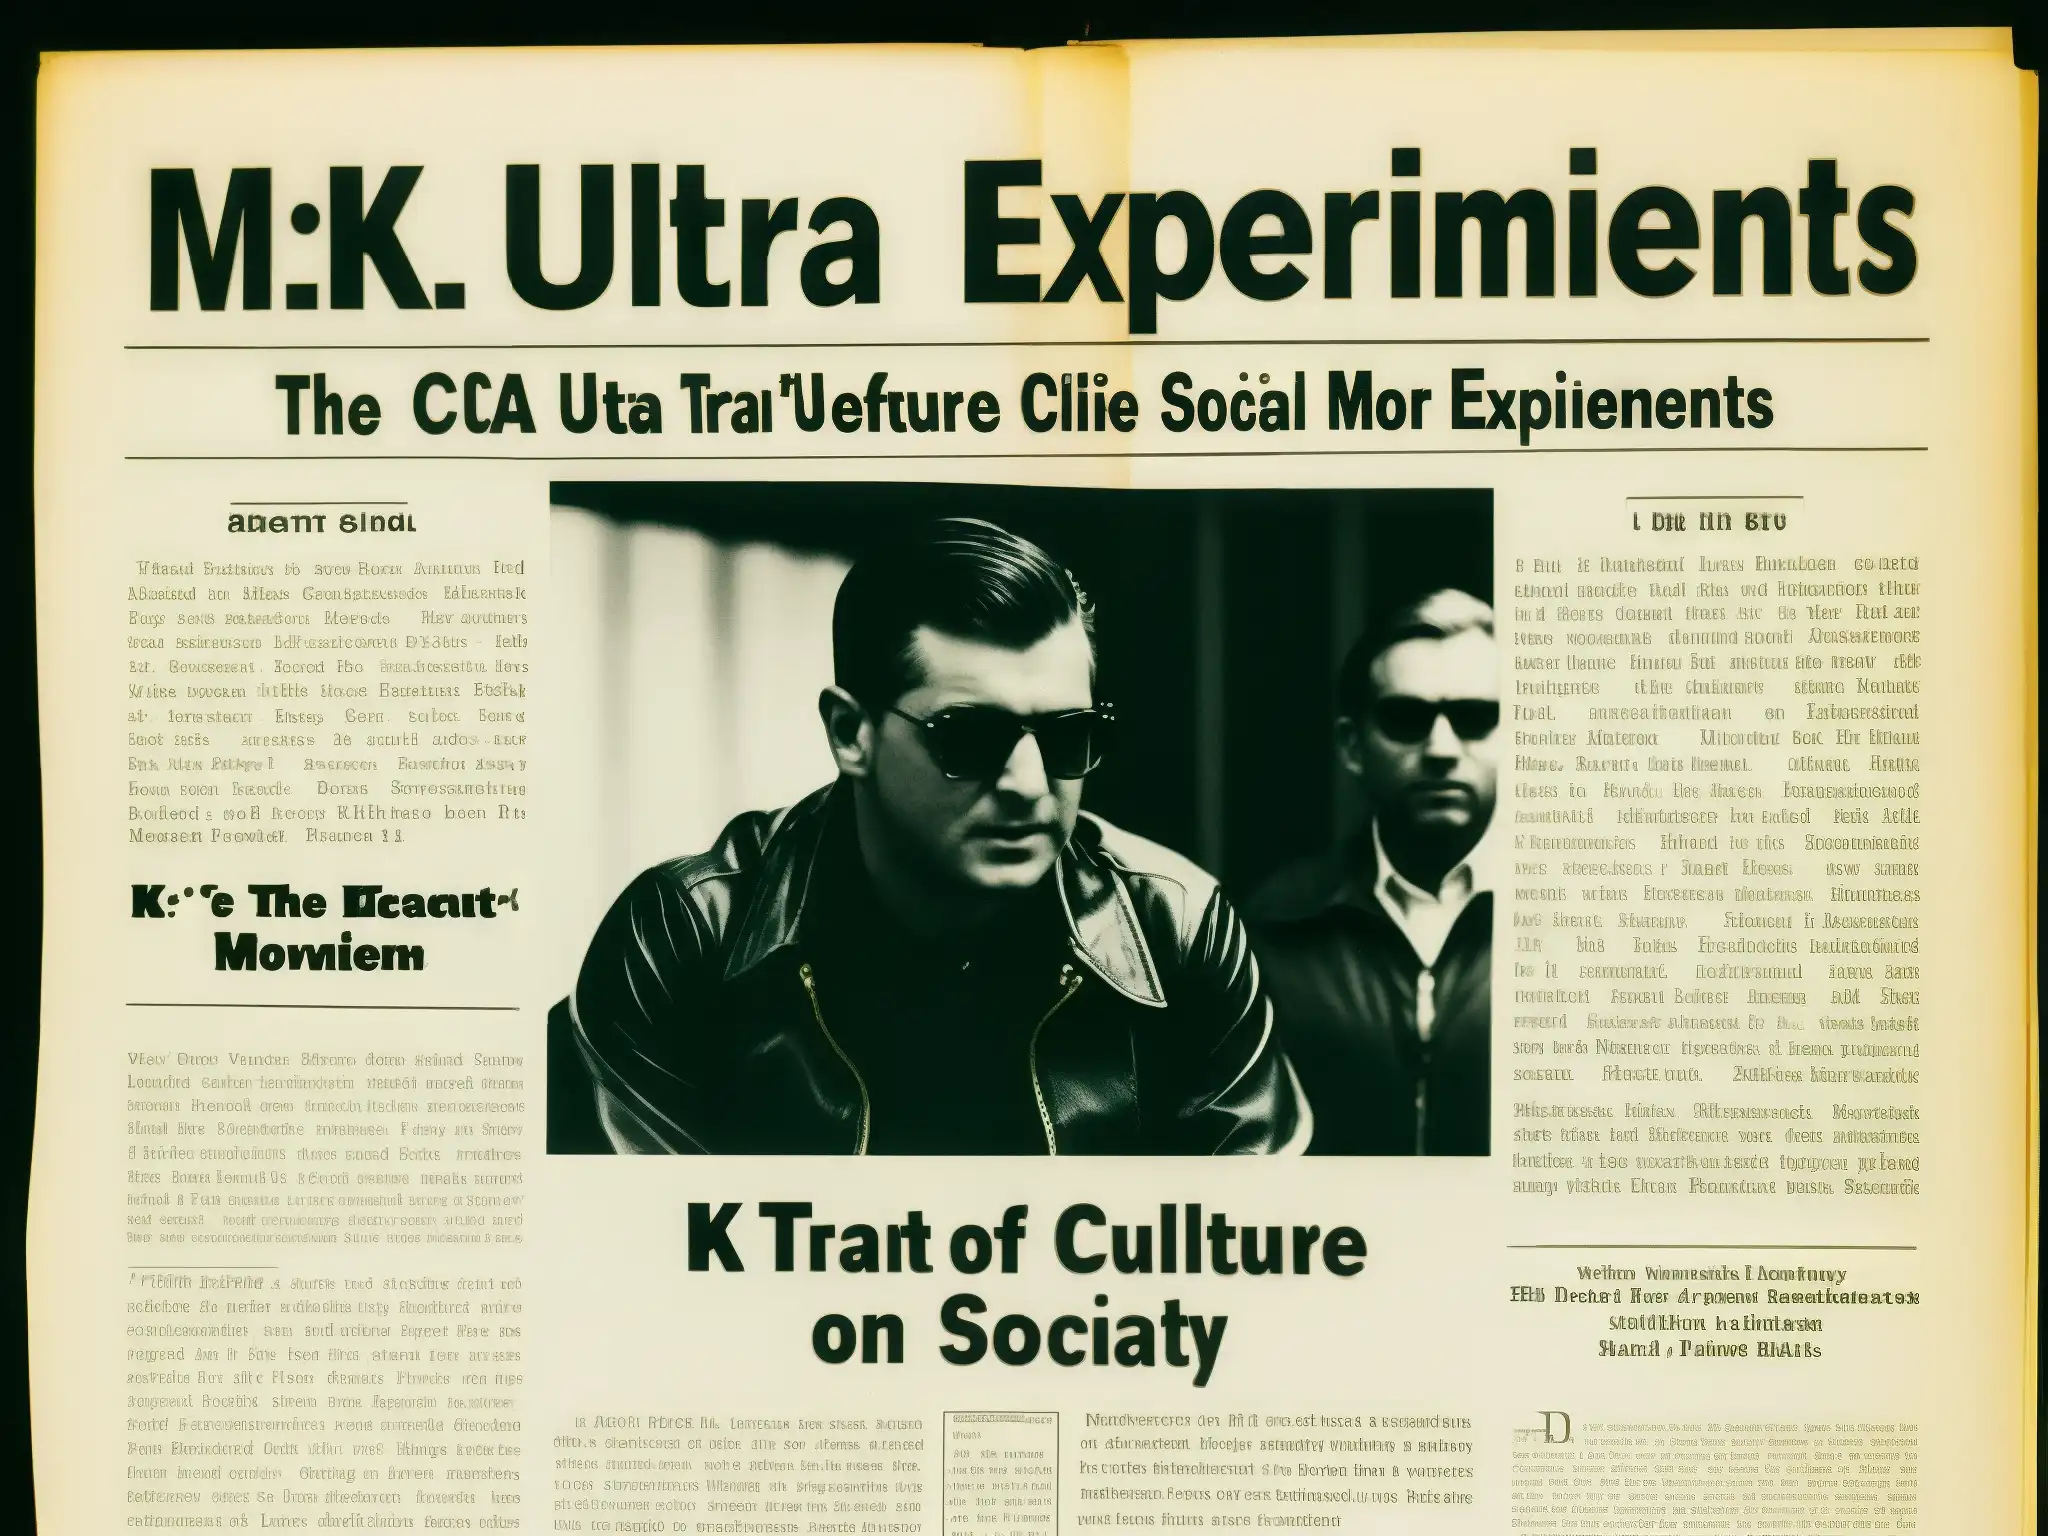 Documento desclasificado de la CIA sobre experimentos MK Ultra, impacto en la cultura popular y repercusiones sociales